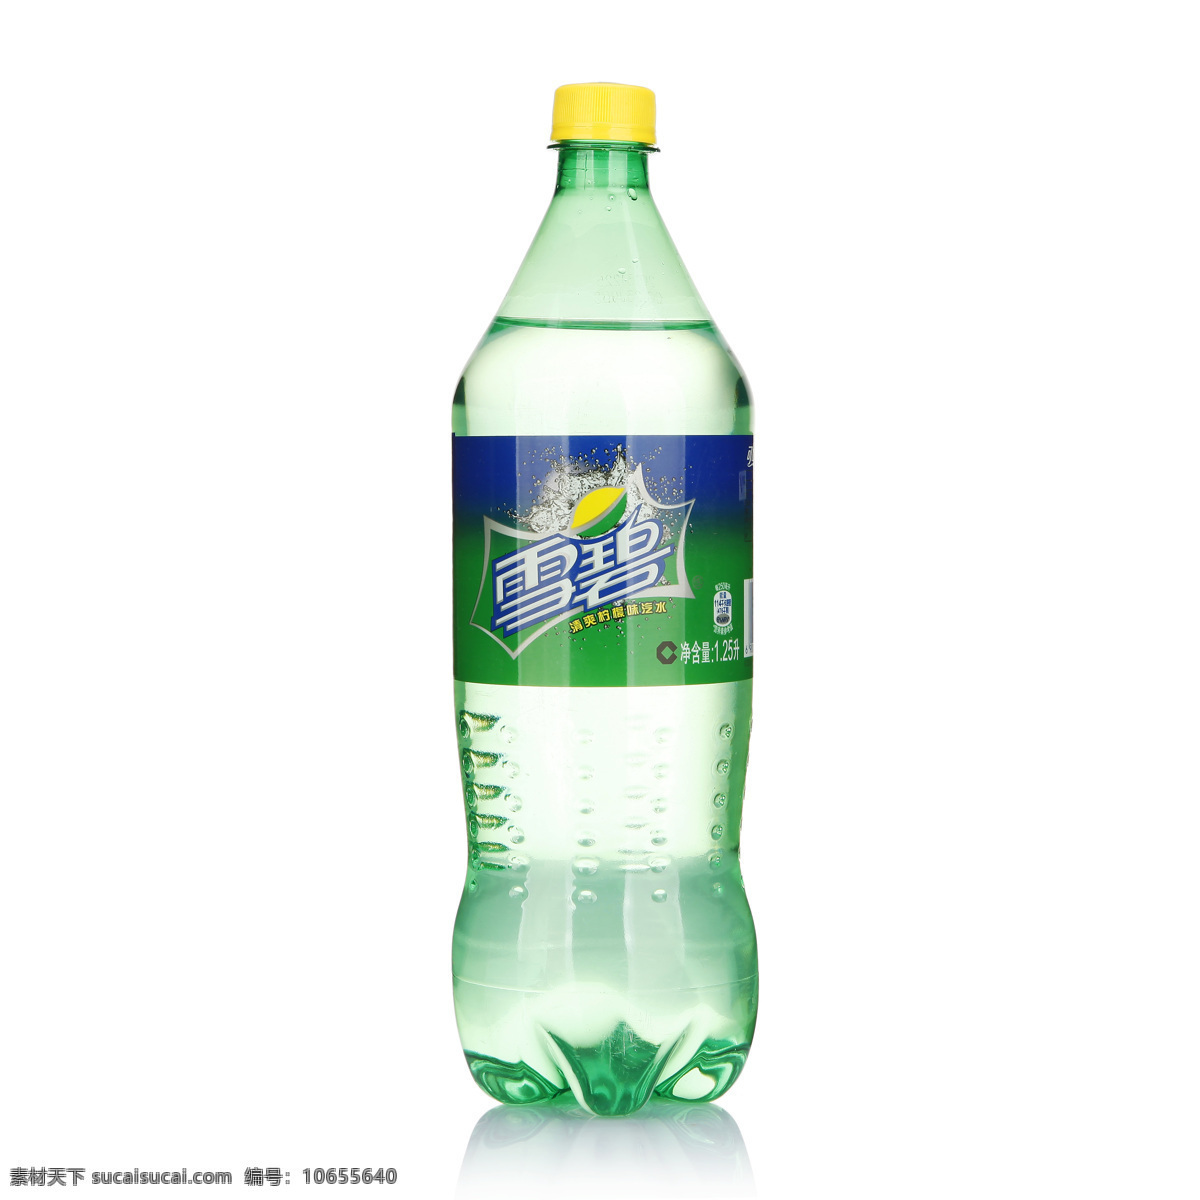 雪碧 饮料 碳酸饮料 易拉罐 产品照 汽水 饮料酒水 餐饮美食